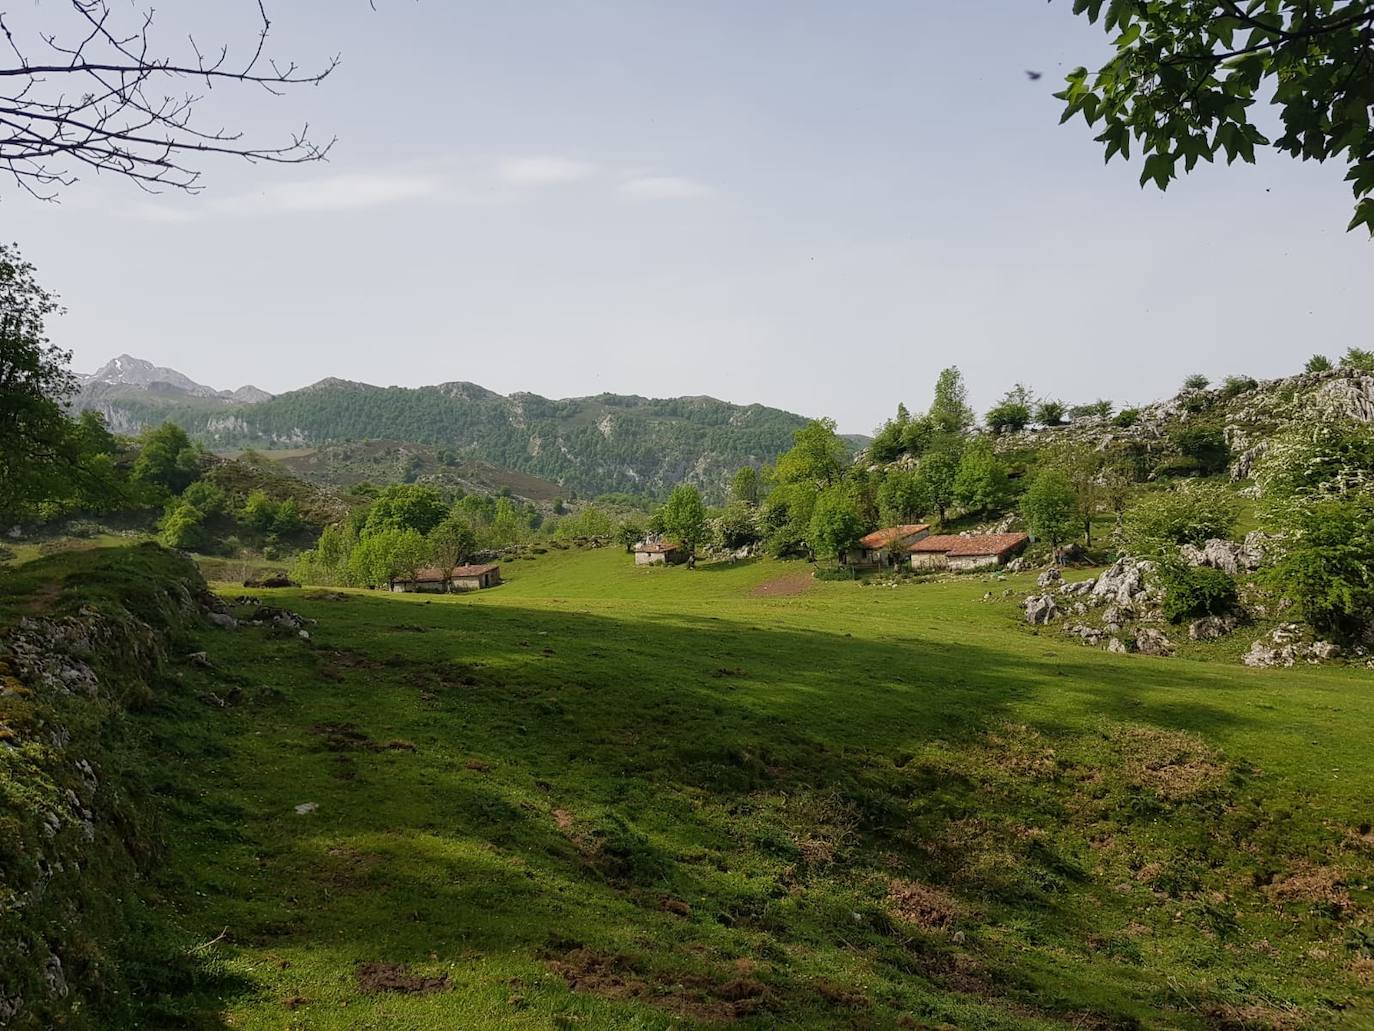 Majada de Fana, precioso lugar para tomarse un pequeño descanso antes de continuar el ascenso hasta los Lagos de Covadonga